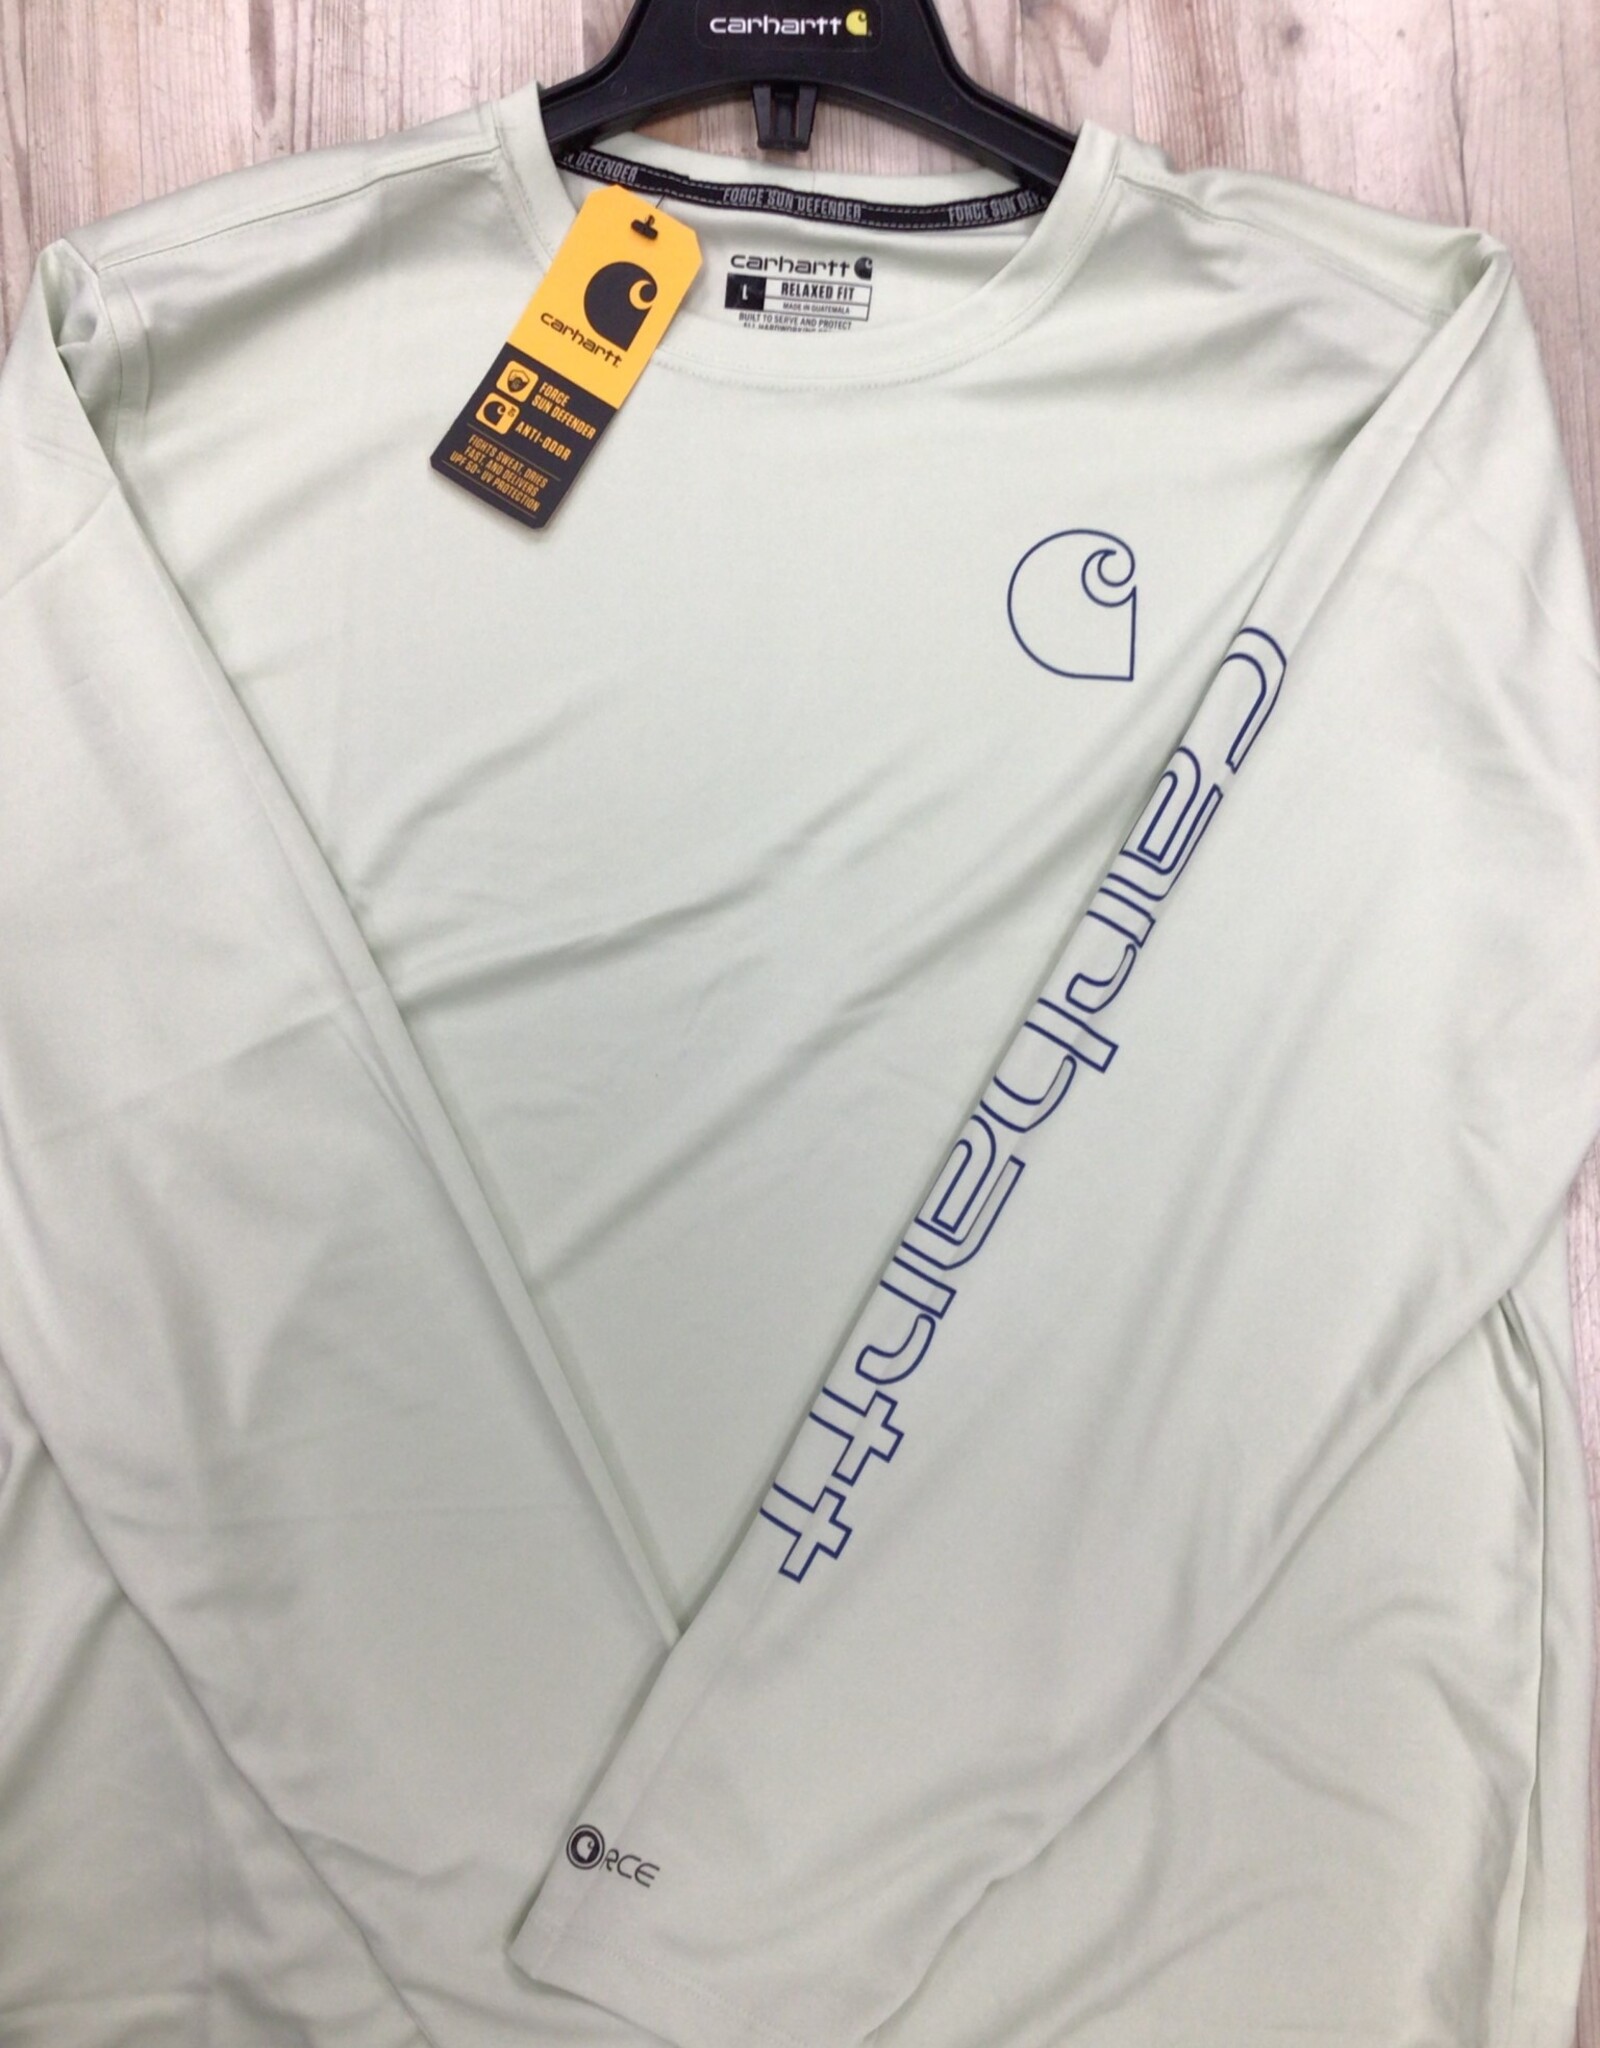 Carhartt Carhartt 106164 Force Sun Defender Lightweight Long-Sleeve Logo Graphic T-Shirt Men’s